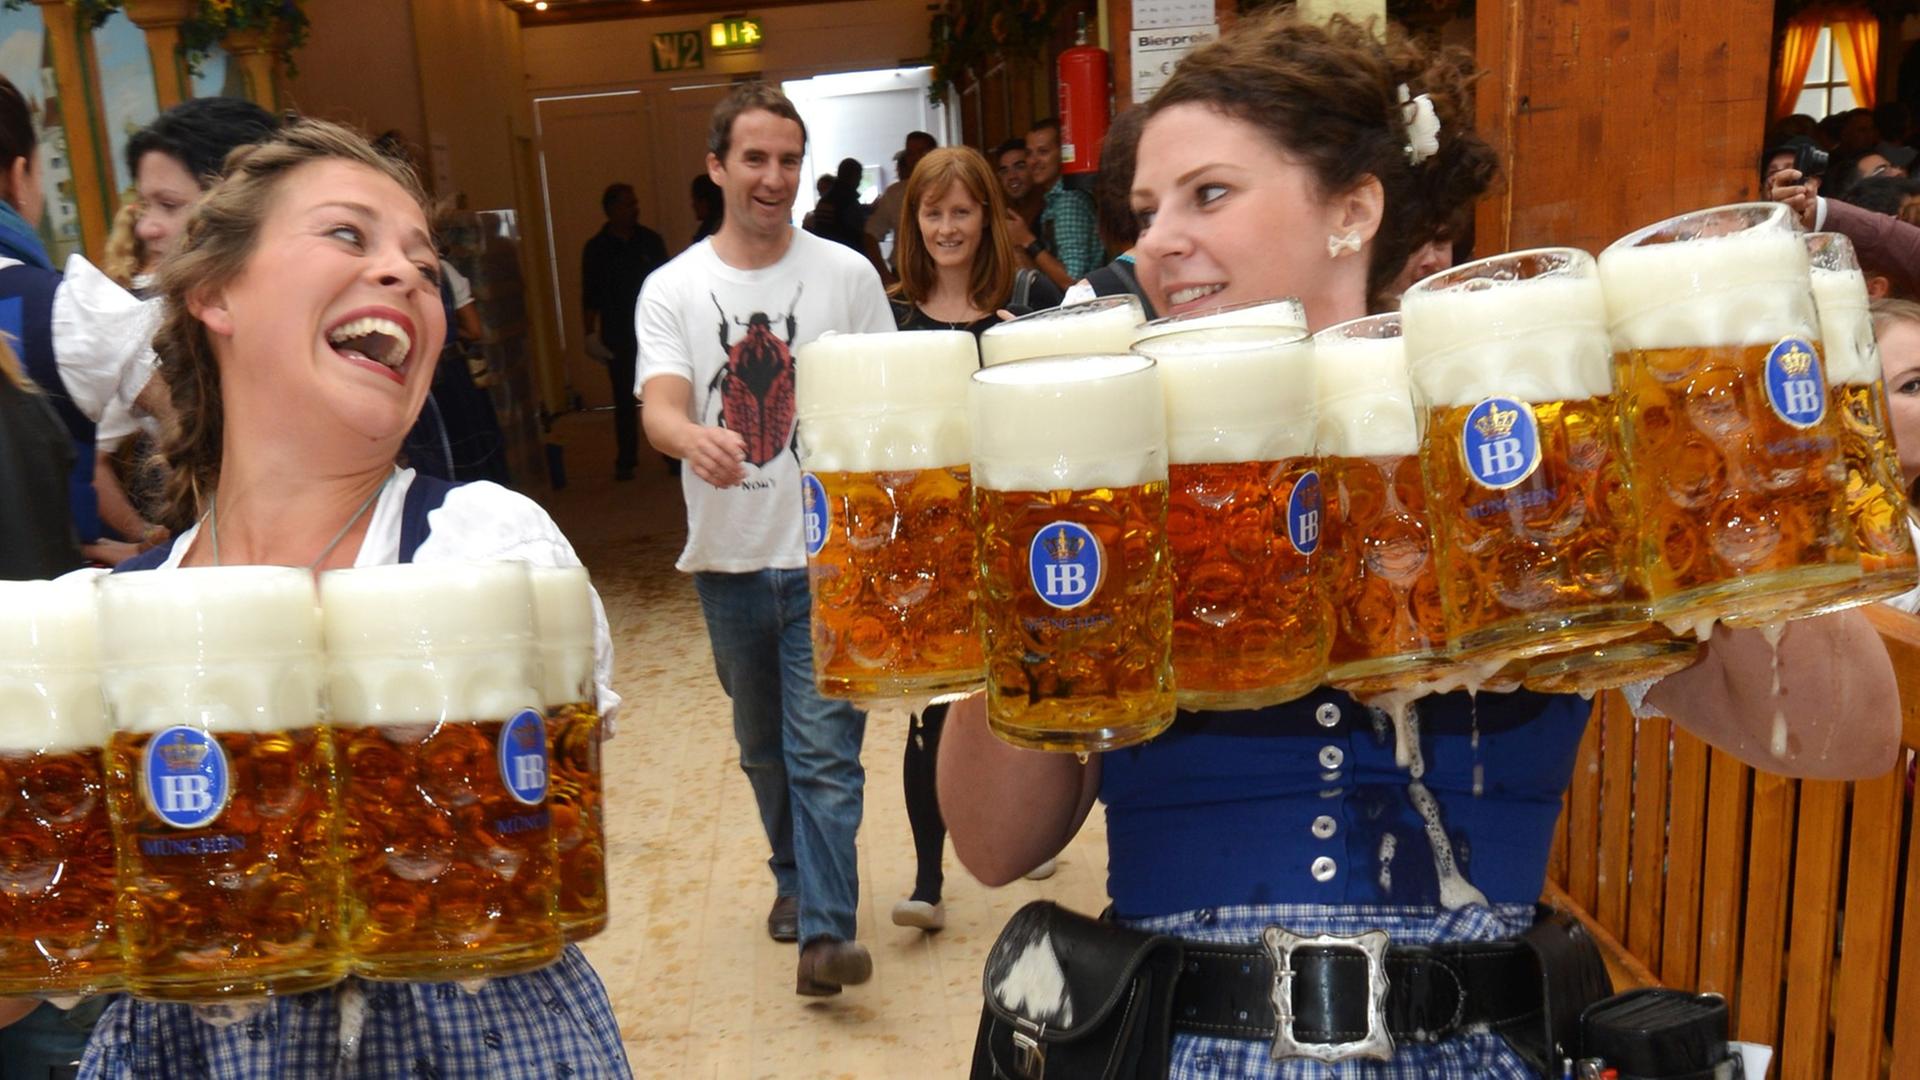 Bedienungen bei der Eröffnung des 180. Oktoberfests am 21.09.2013 in München (Bayern) mit Bierkrügen.